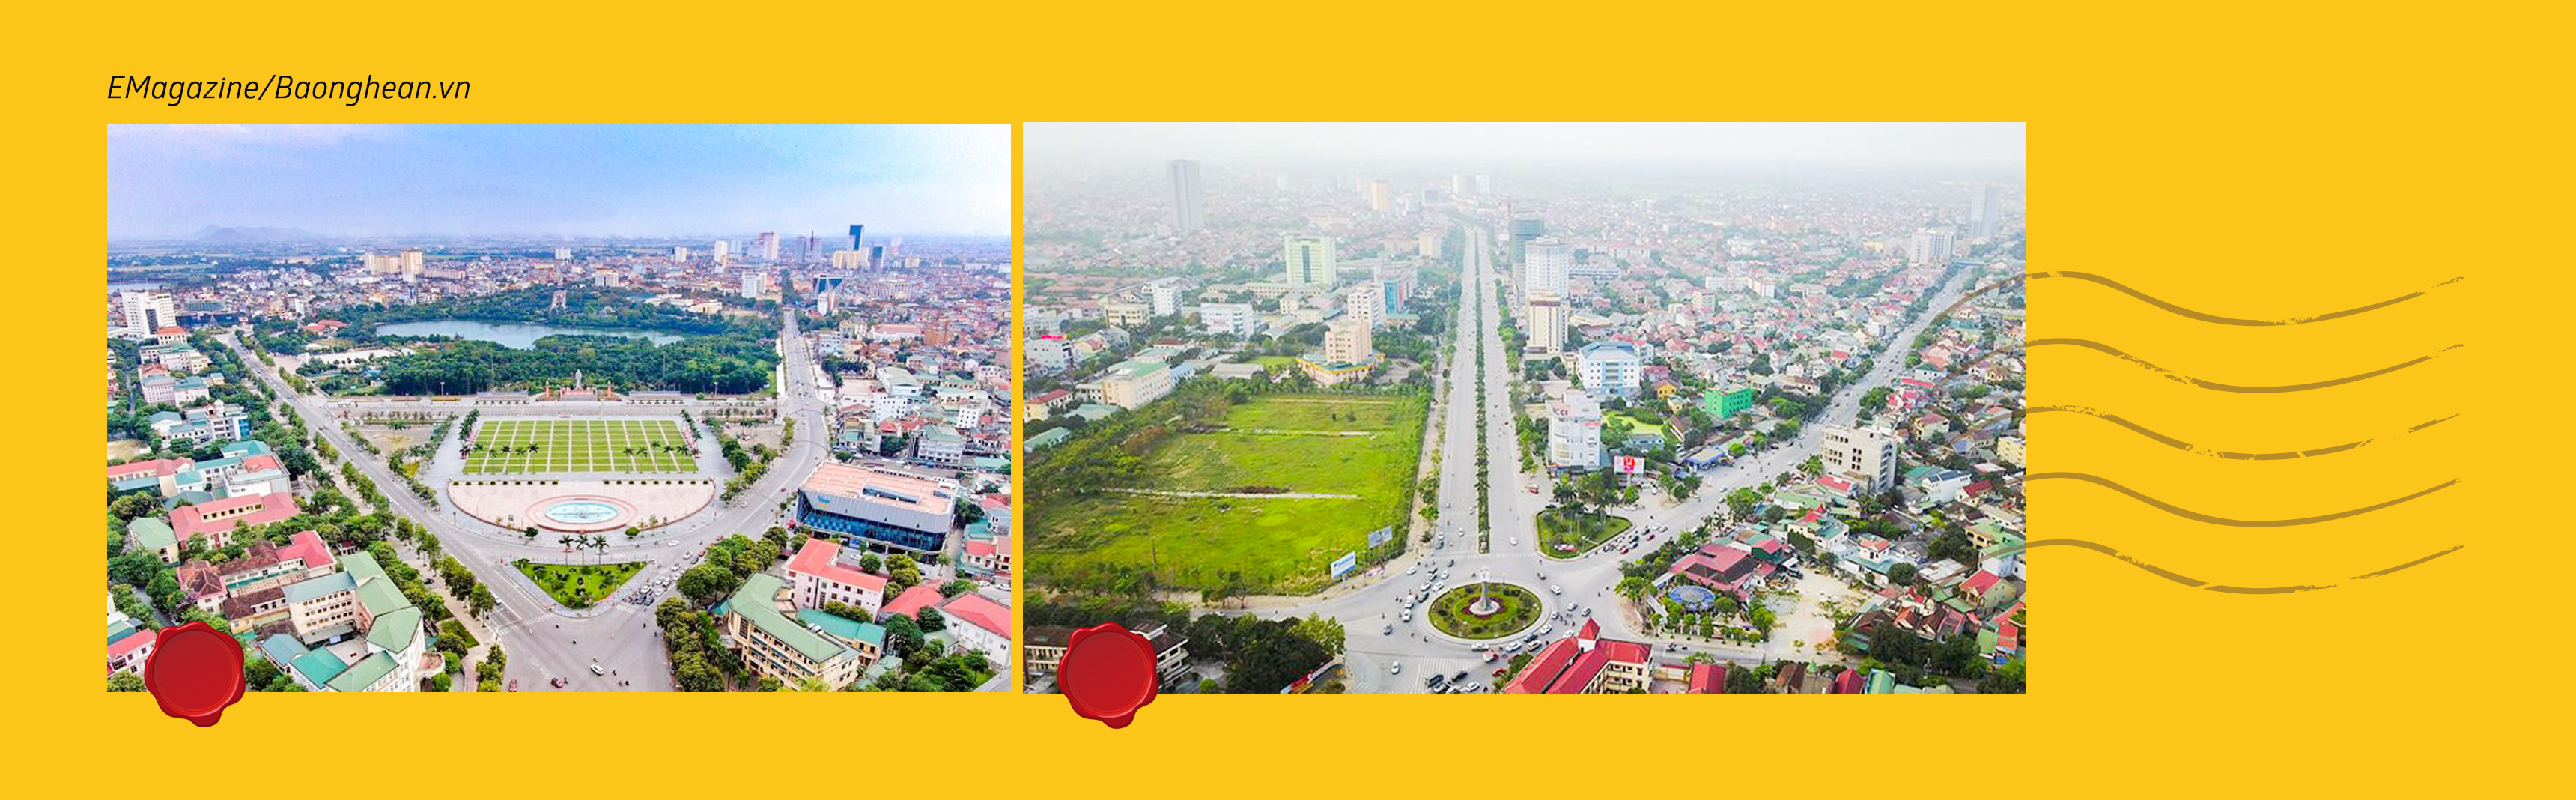 Toàn cảnh Quảng trường Hồ Chí Minh nhìn từ trên cao; Đại lộ Lênin nối trung tâm đô thị Bắc Trung Bộ với Cảng Hàng không Quốc tế Vinh. Ảnh Tư liệu